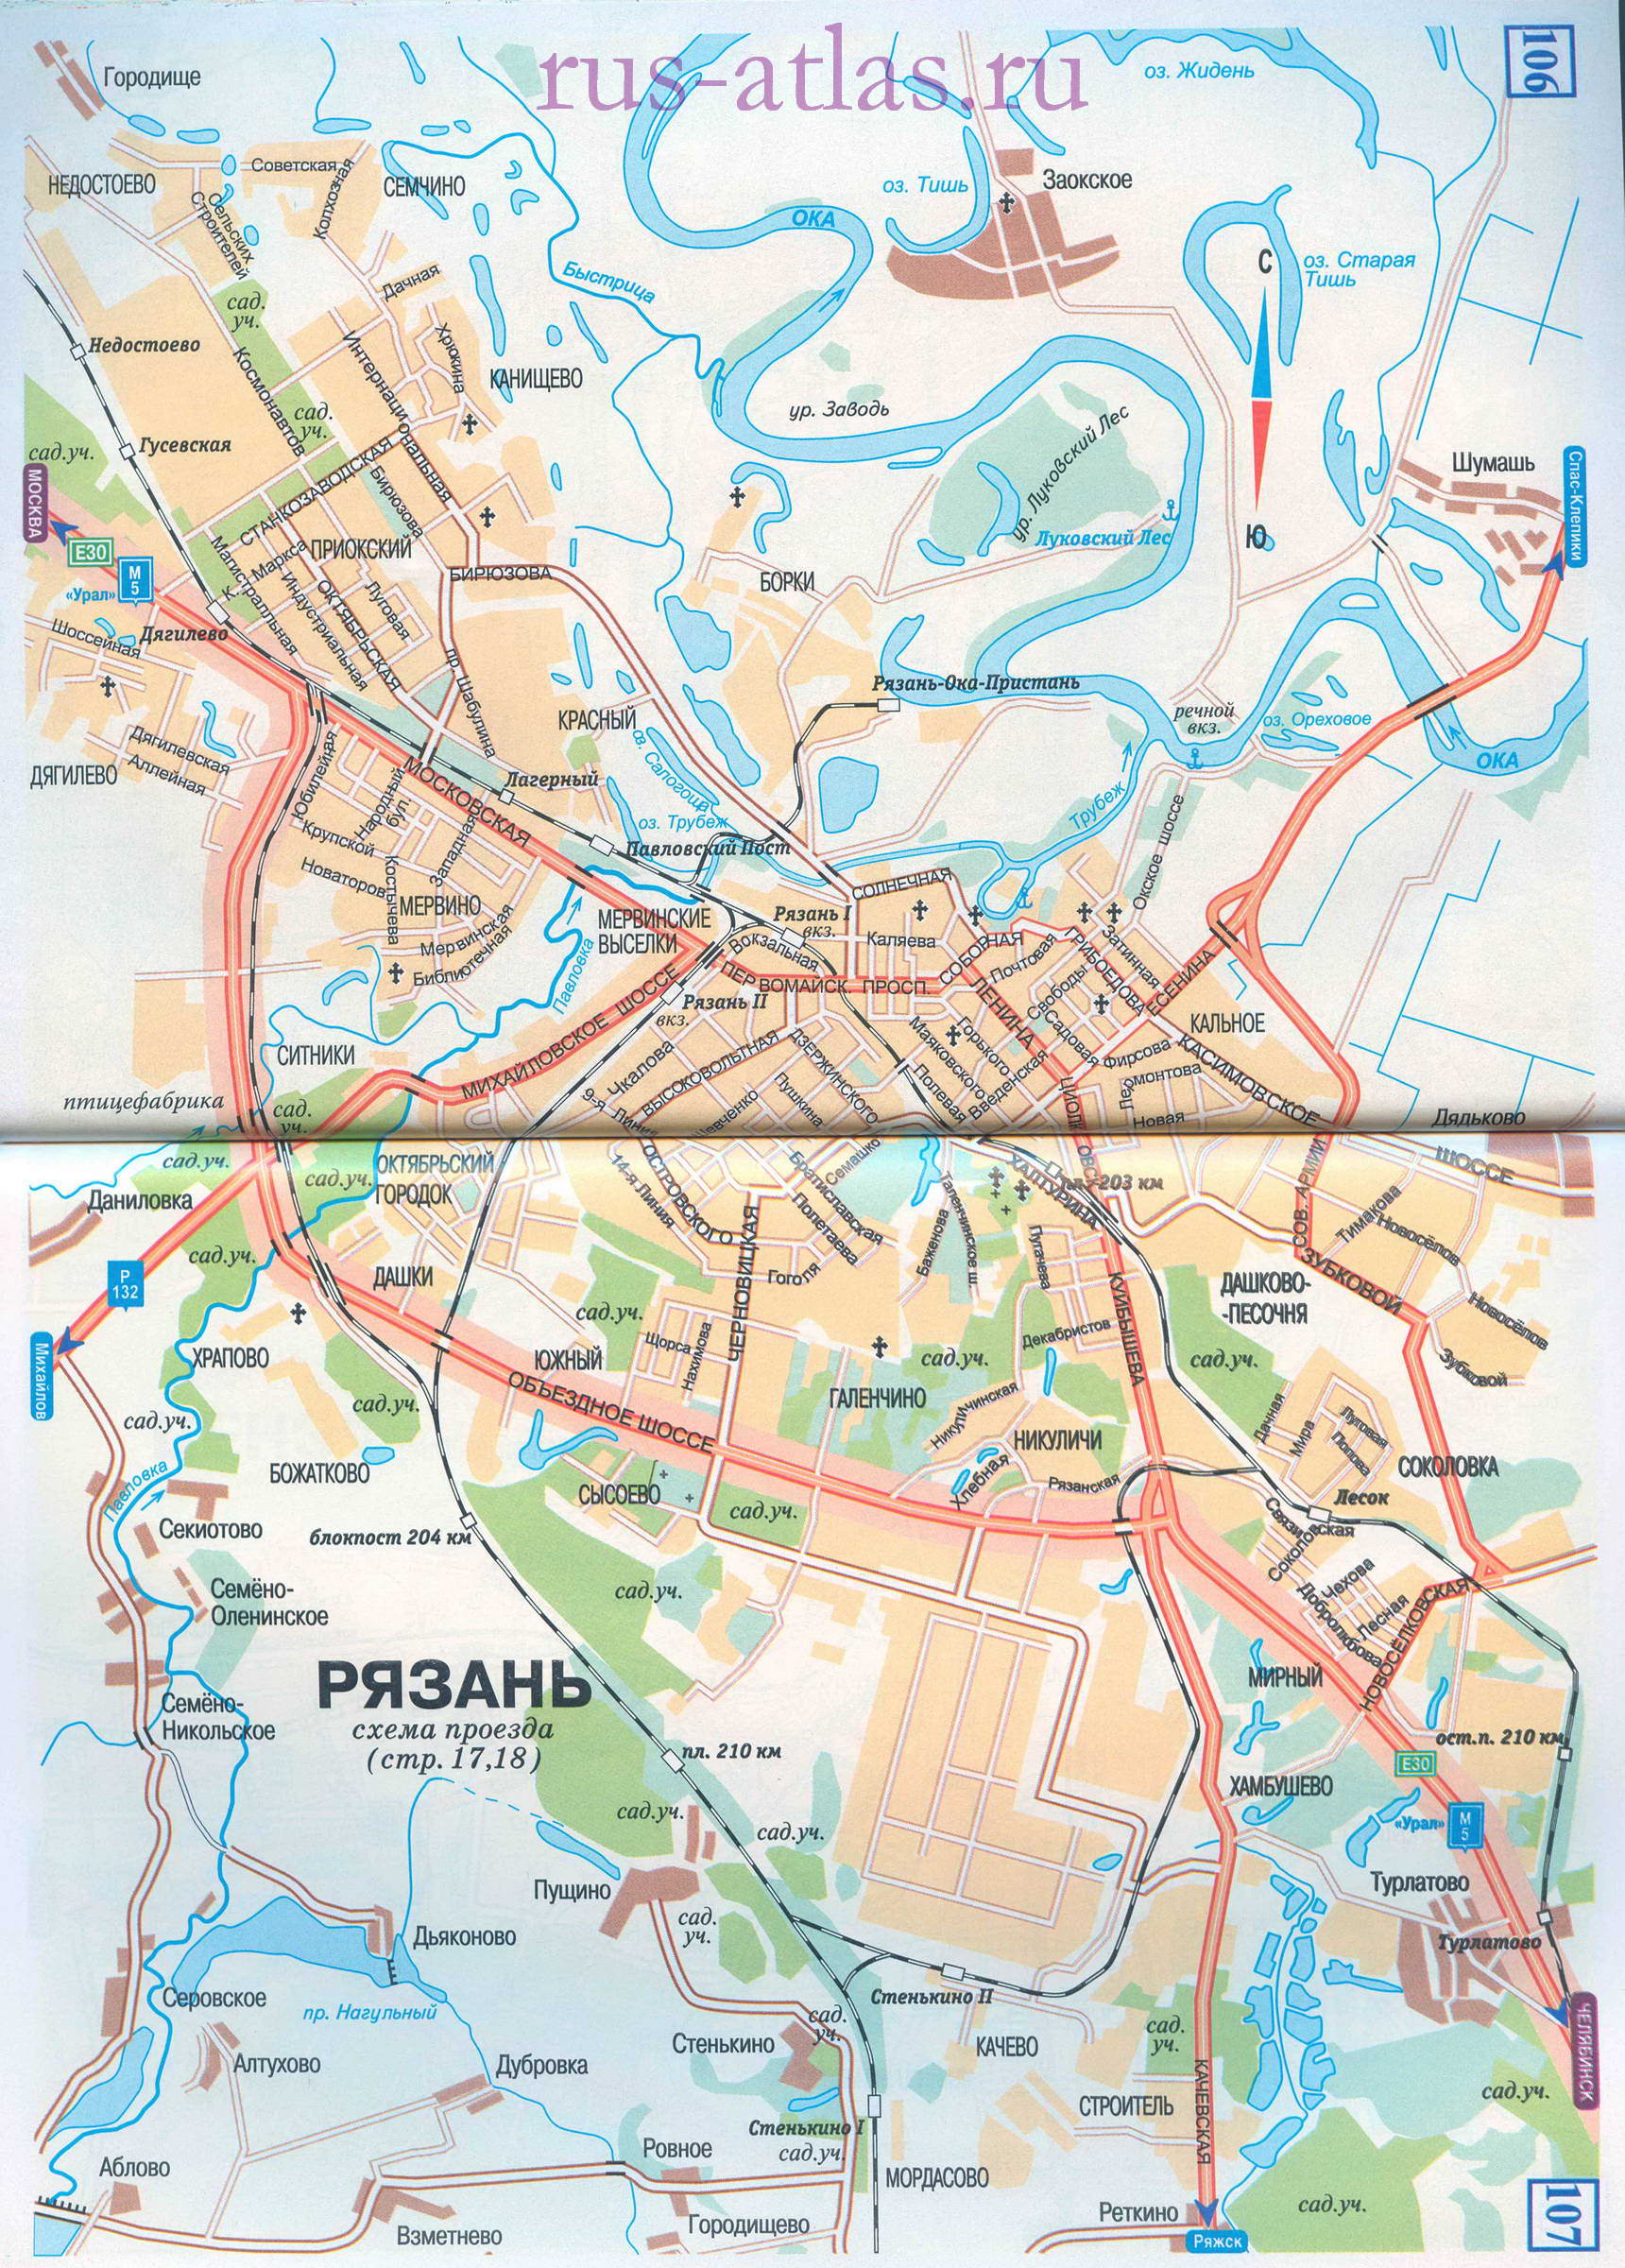  Карта улиц Рязани. Подробная карта города Рязань с названиями улиц и схемой проезда автотранспорта, A0 - 